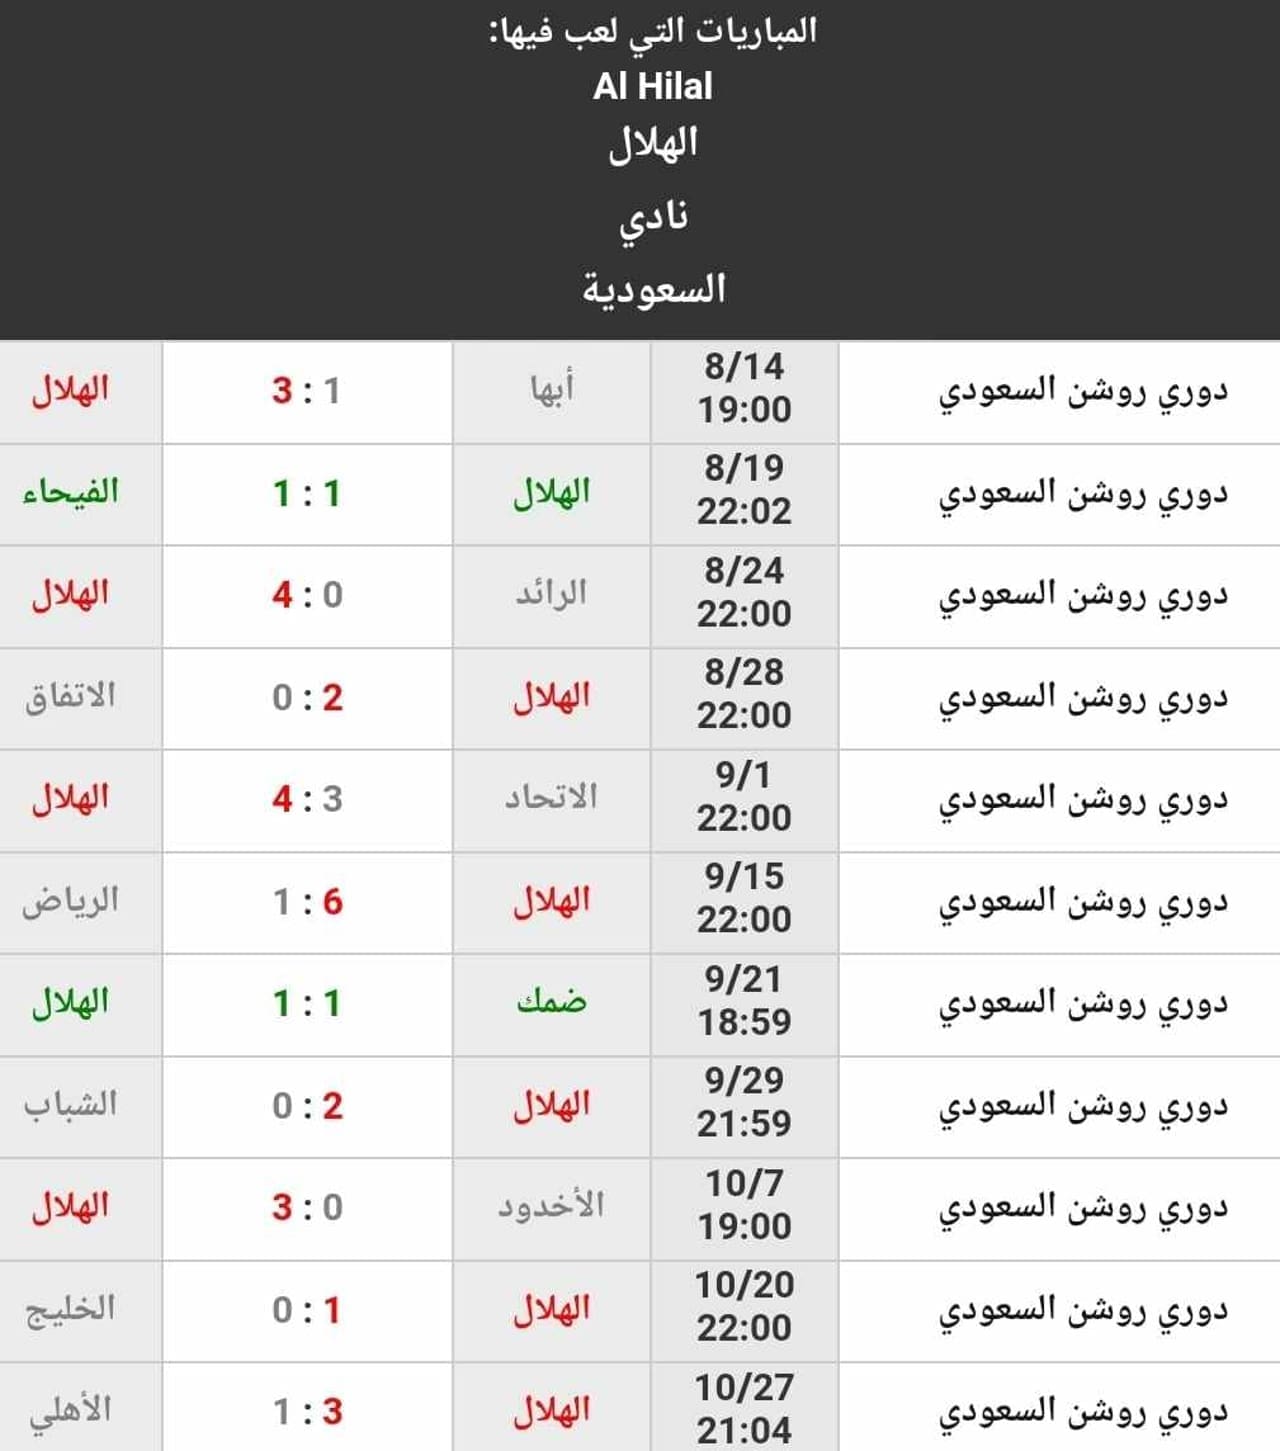 نتائج نادي الهلال حتى الجولة 11 من دوري روشن السعودي (المصدر. موقع Kooora)